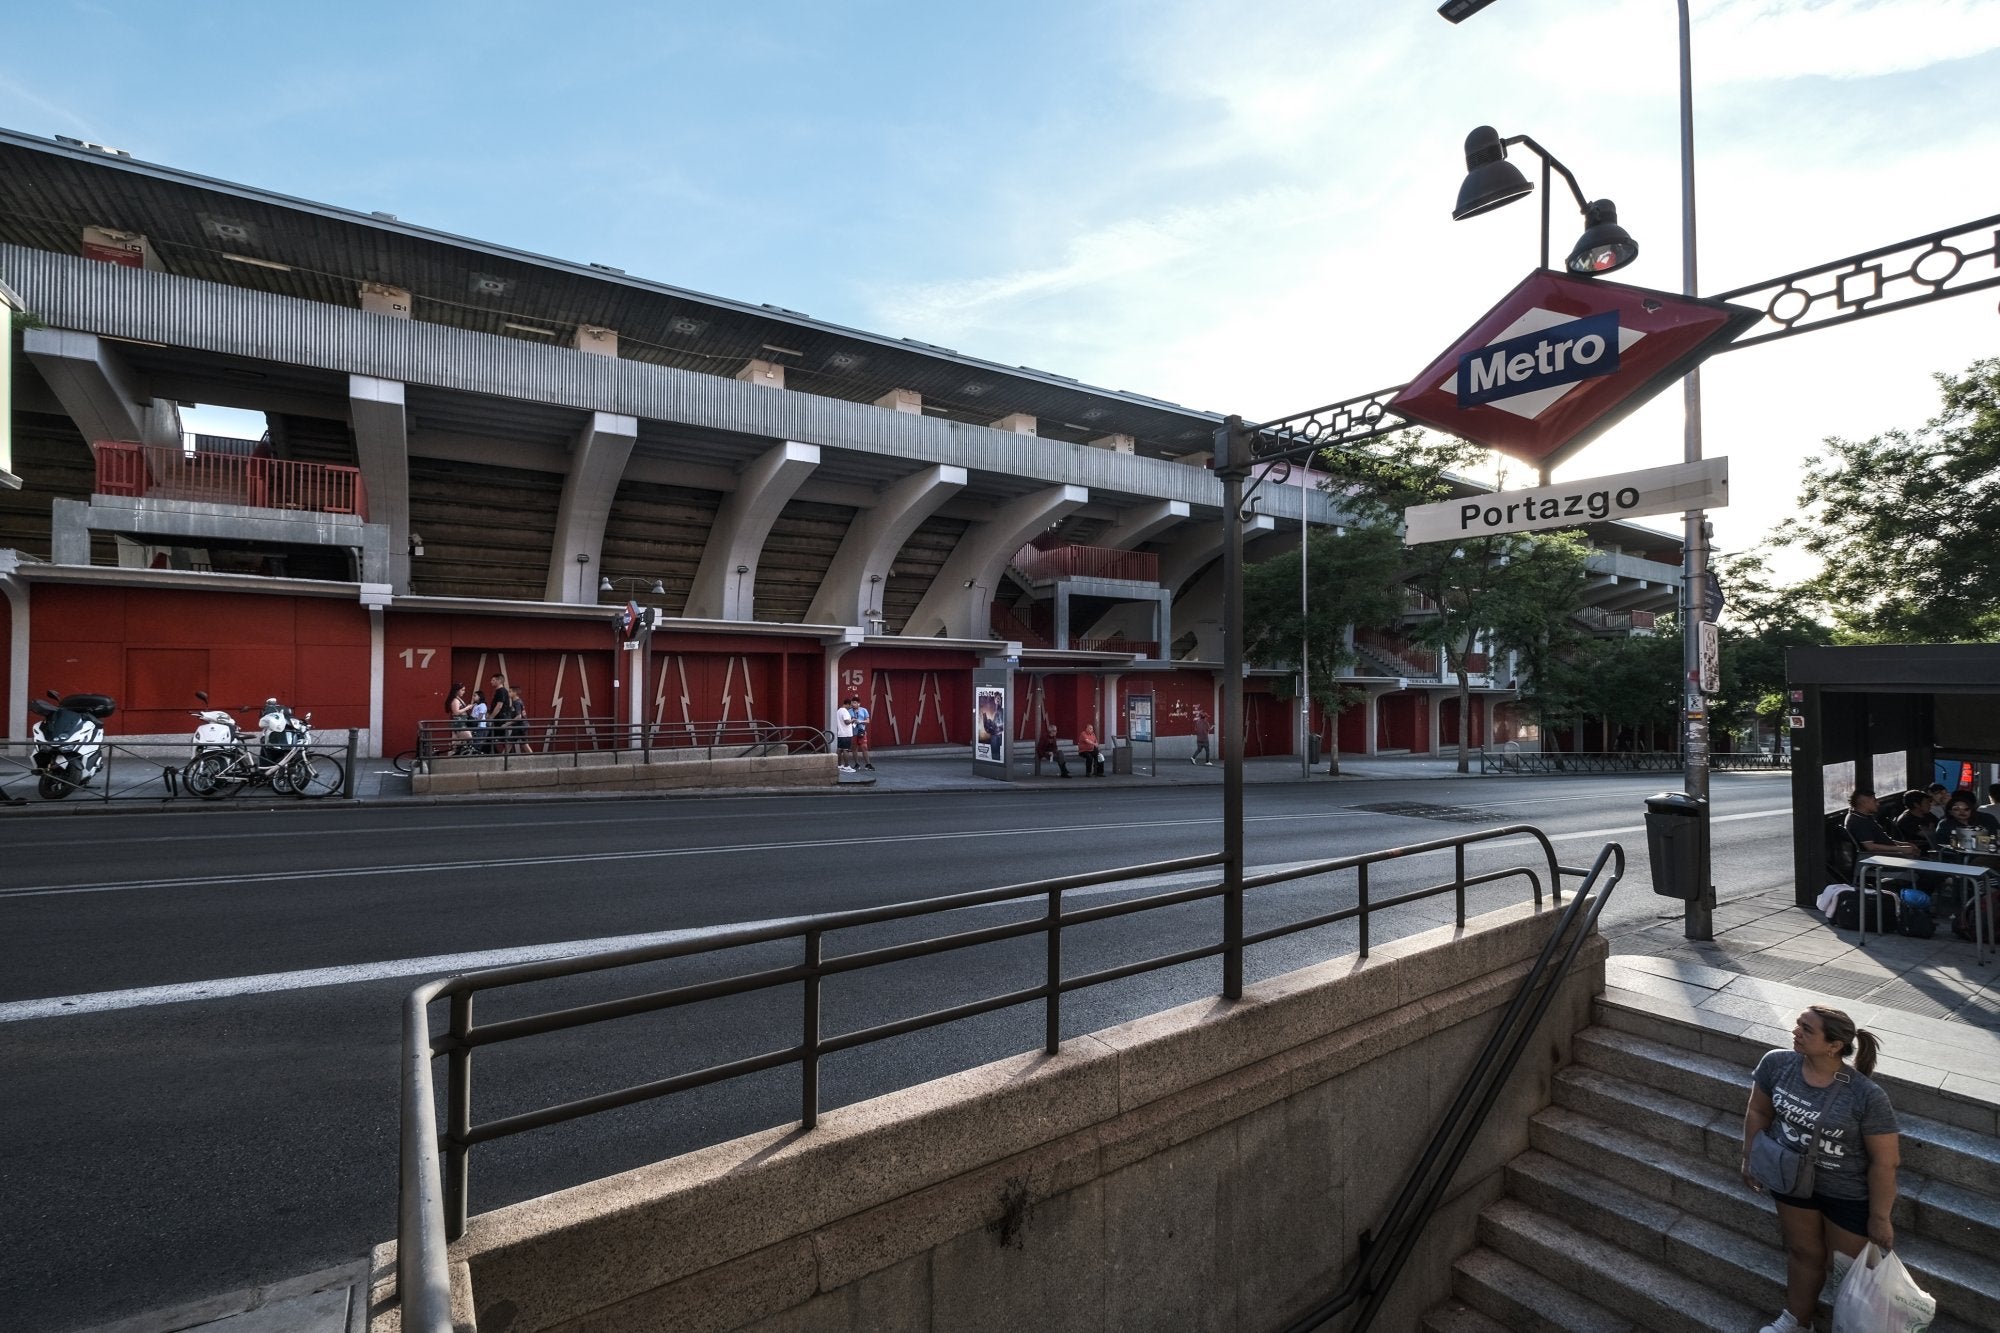 Estadio del Rayo Vallecano